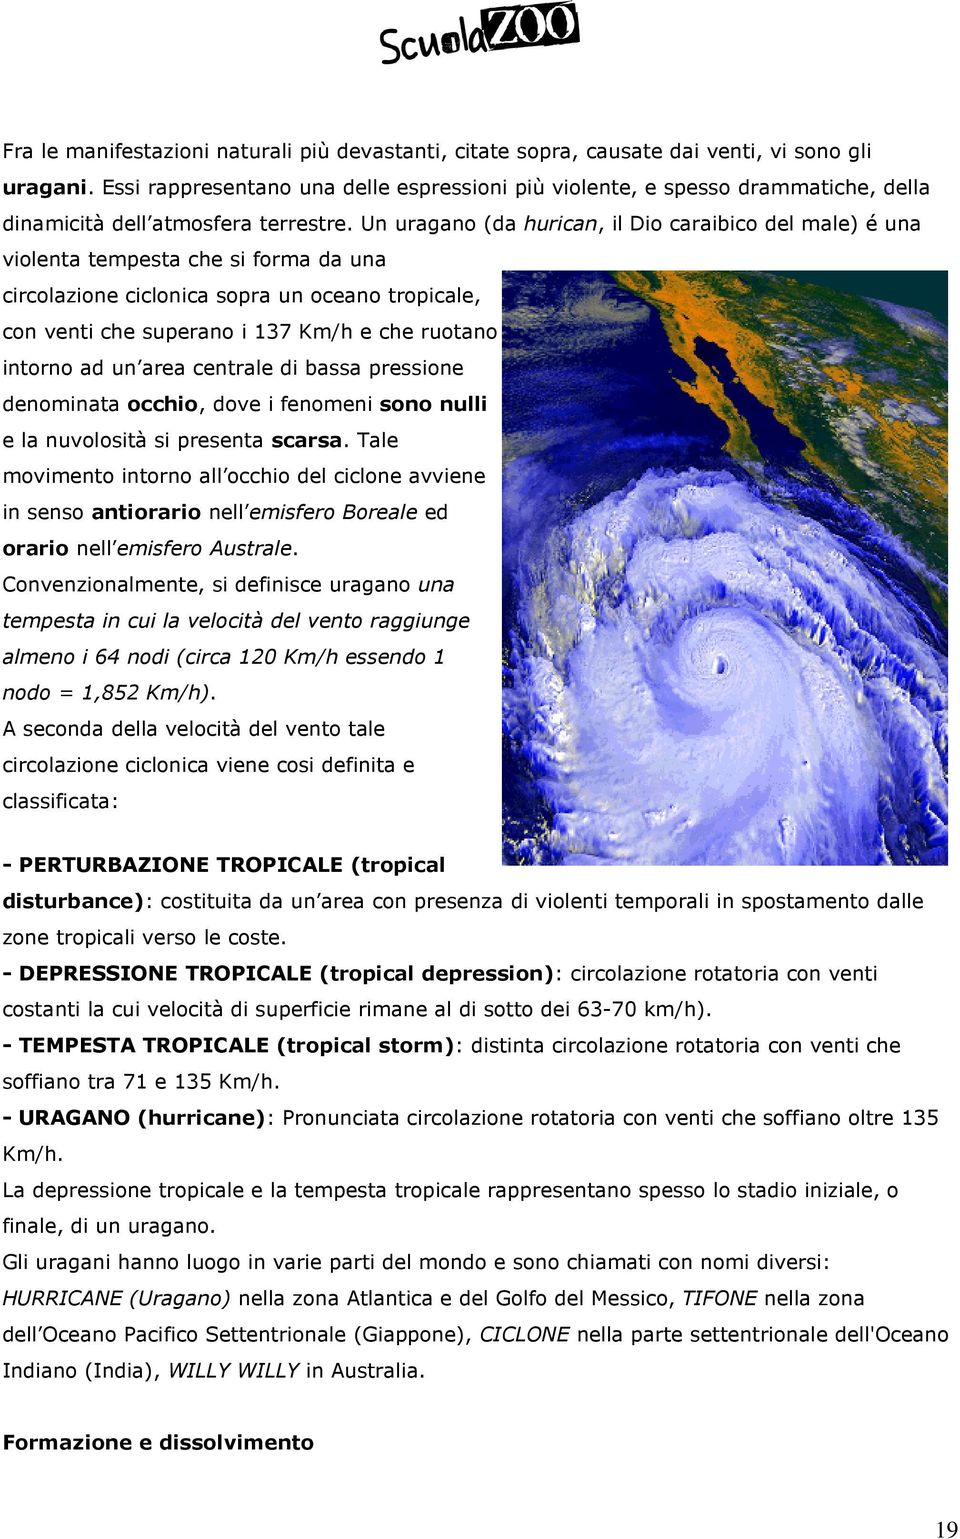 Un uragano (da hurican, il Dio caraibico del male) é una violenta tempesta che si forma da una circolazione ciclonica sopra un oceano tropicale, con venti che superano i 137 Km/h e che ruotano